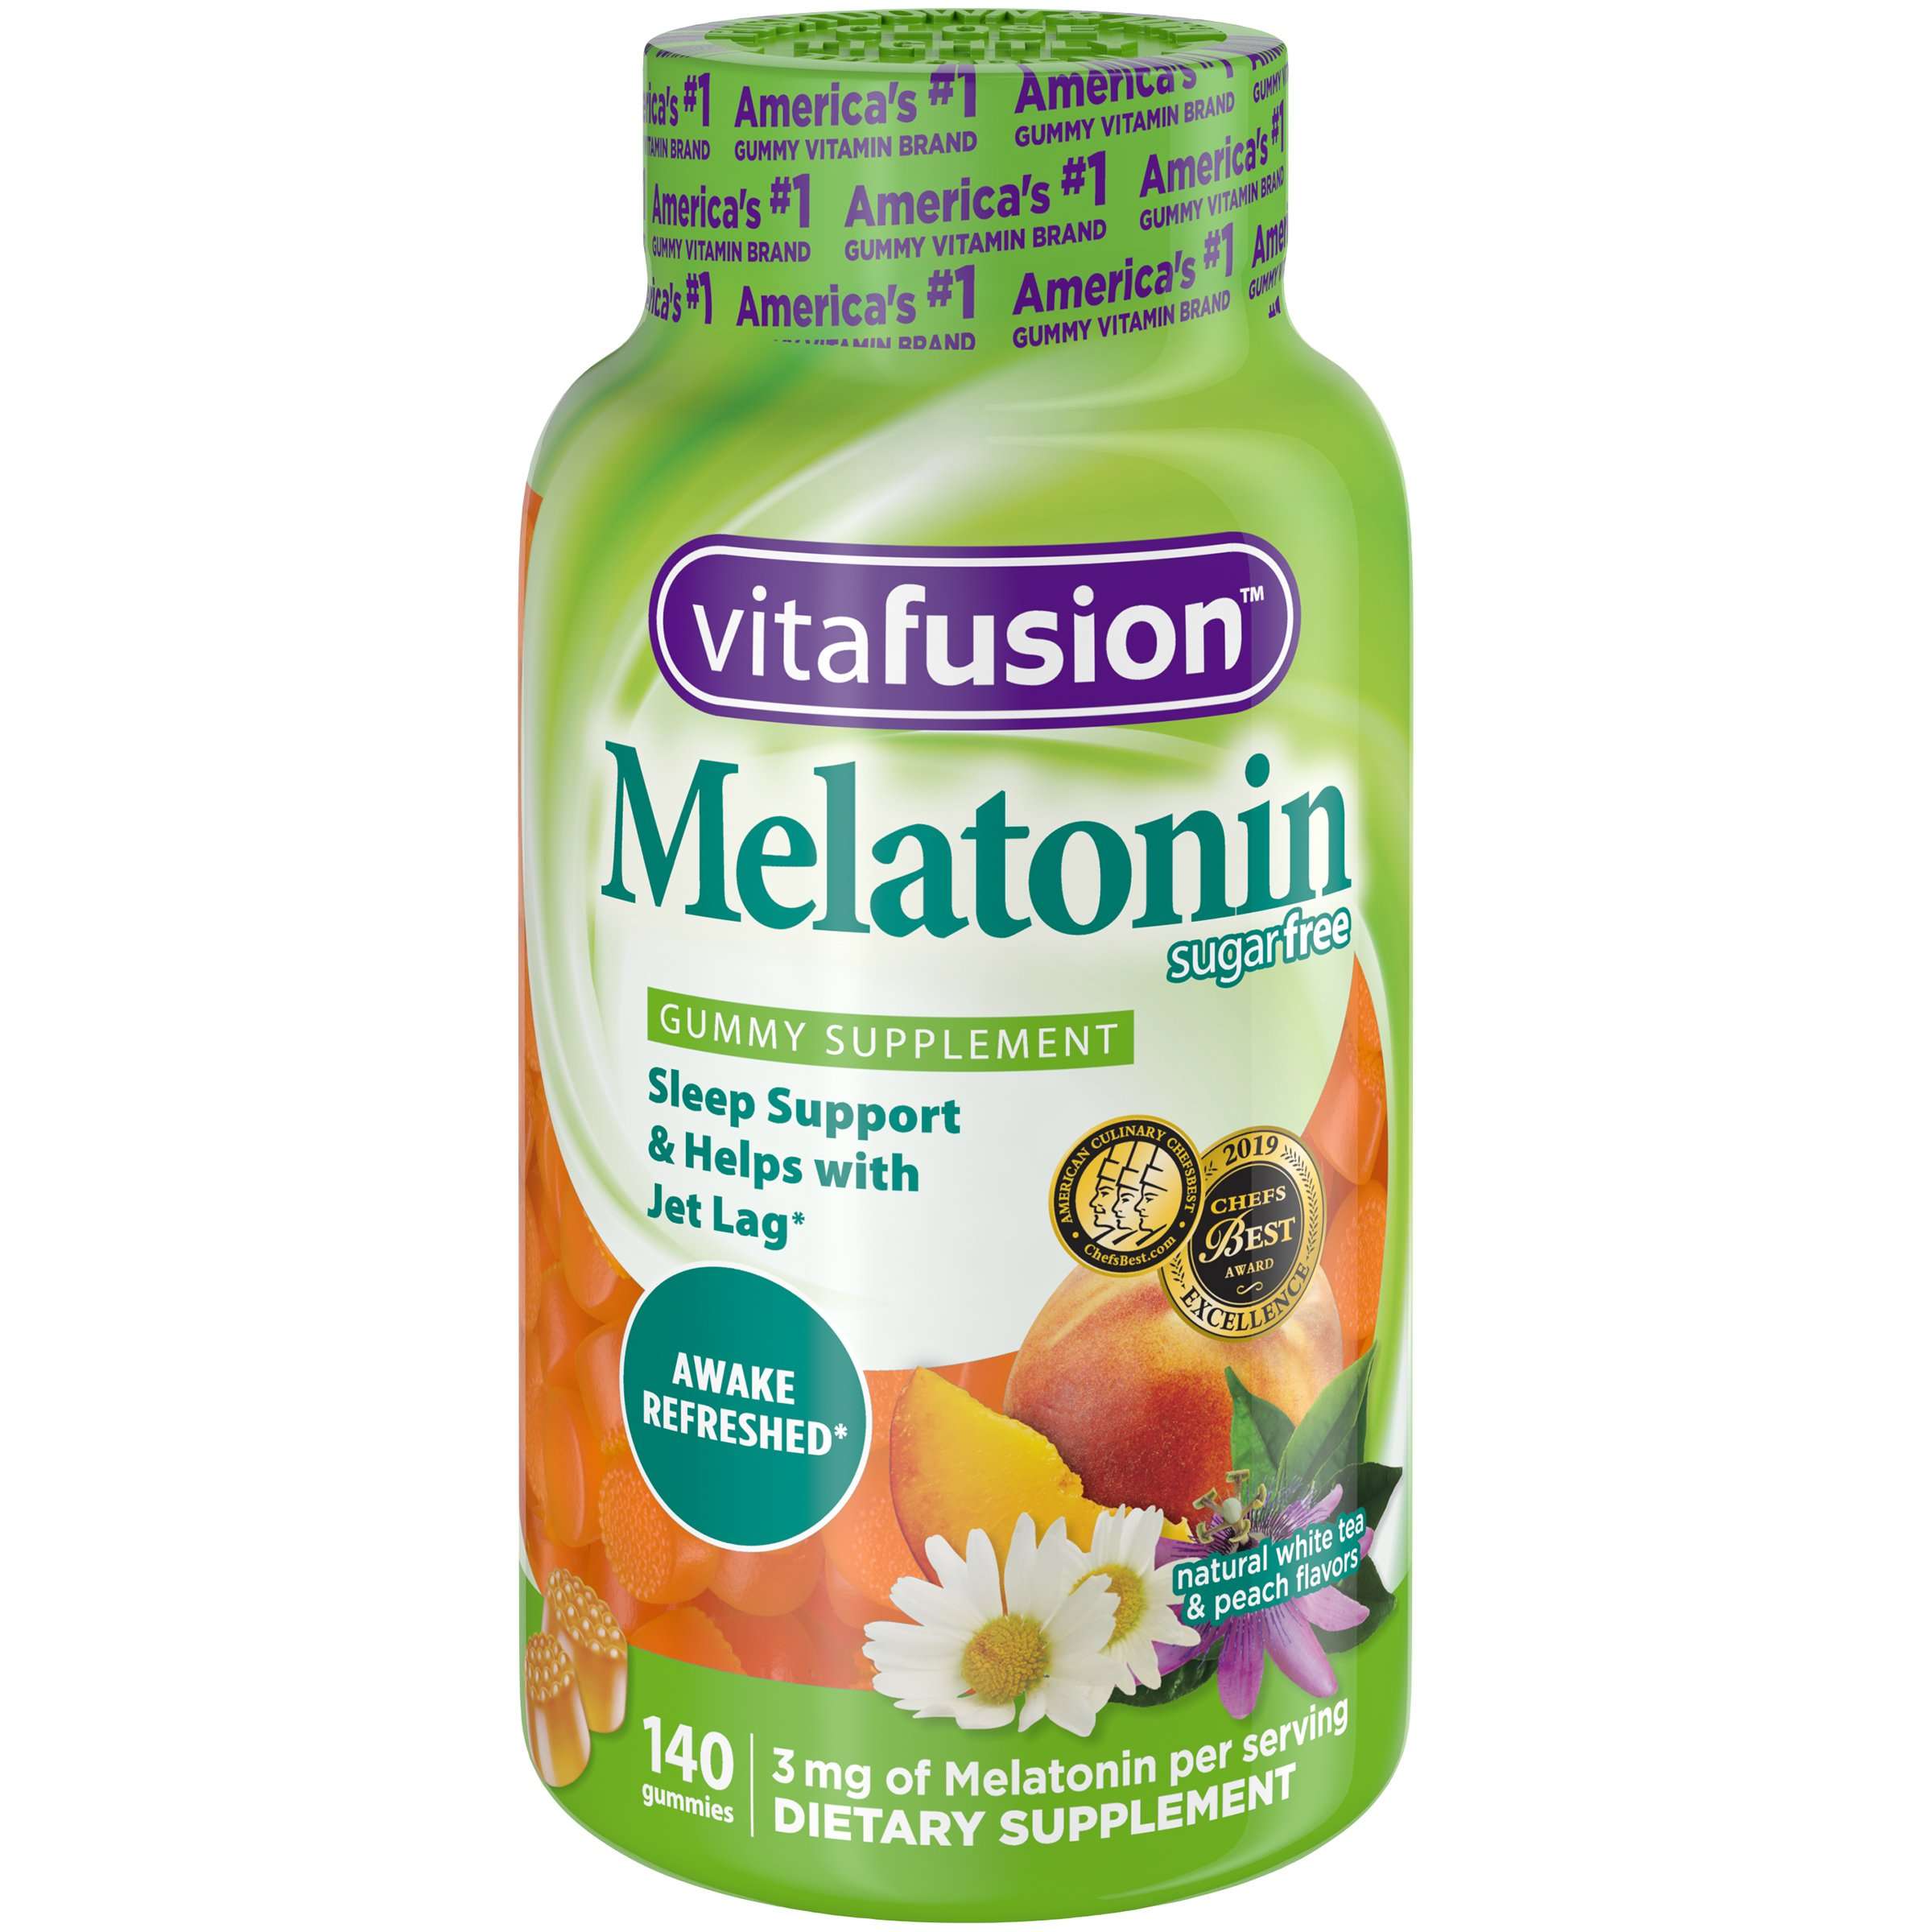 Vitafusion Melatonin Supplement, 140 Ct.